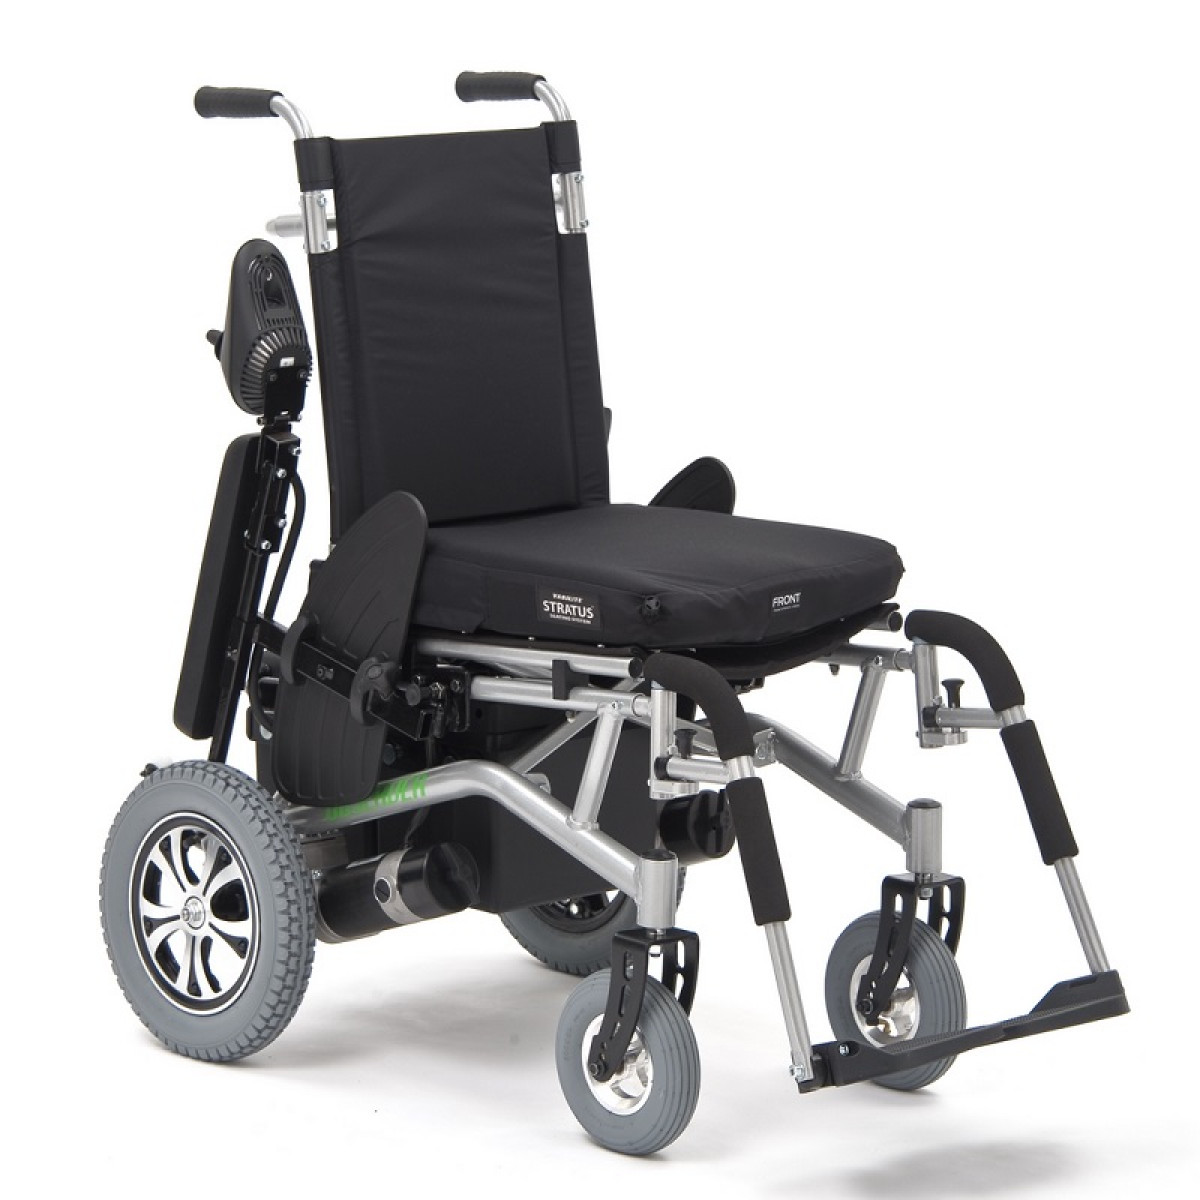 Коляски инвалидные с приводом цена. Обсервер стандарт коляски с электроприводом. Кресло-коляска с электроприводом Observer Standart. Инвалидная коляска с электроприводом Observer. Коляска с электроприводом для инвалидов Обсервер стандарт.